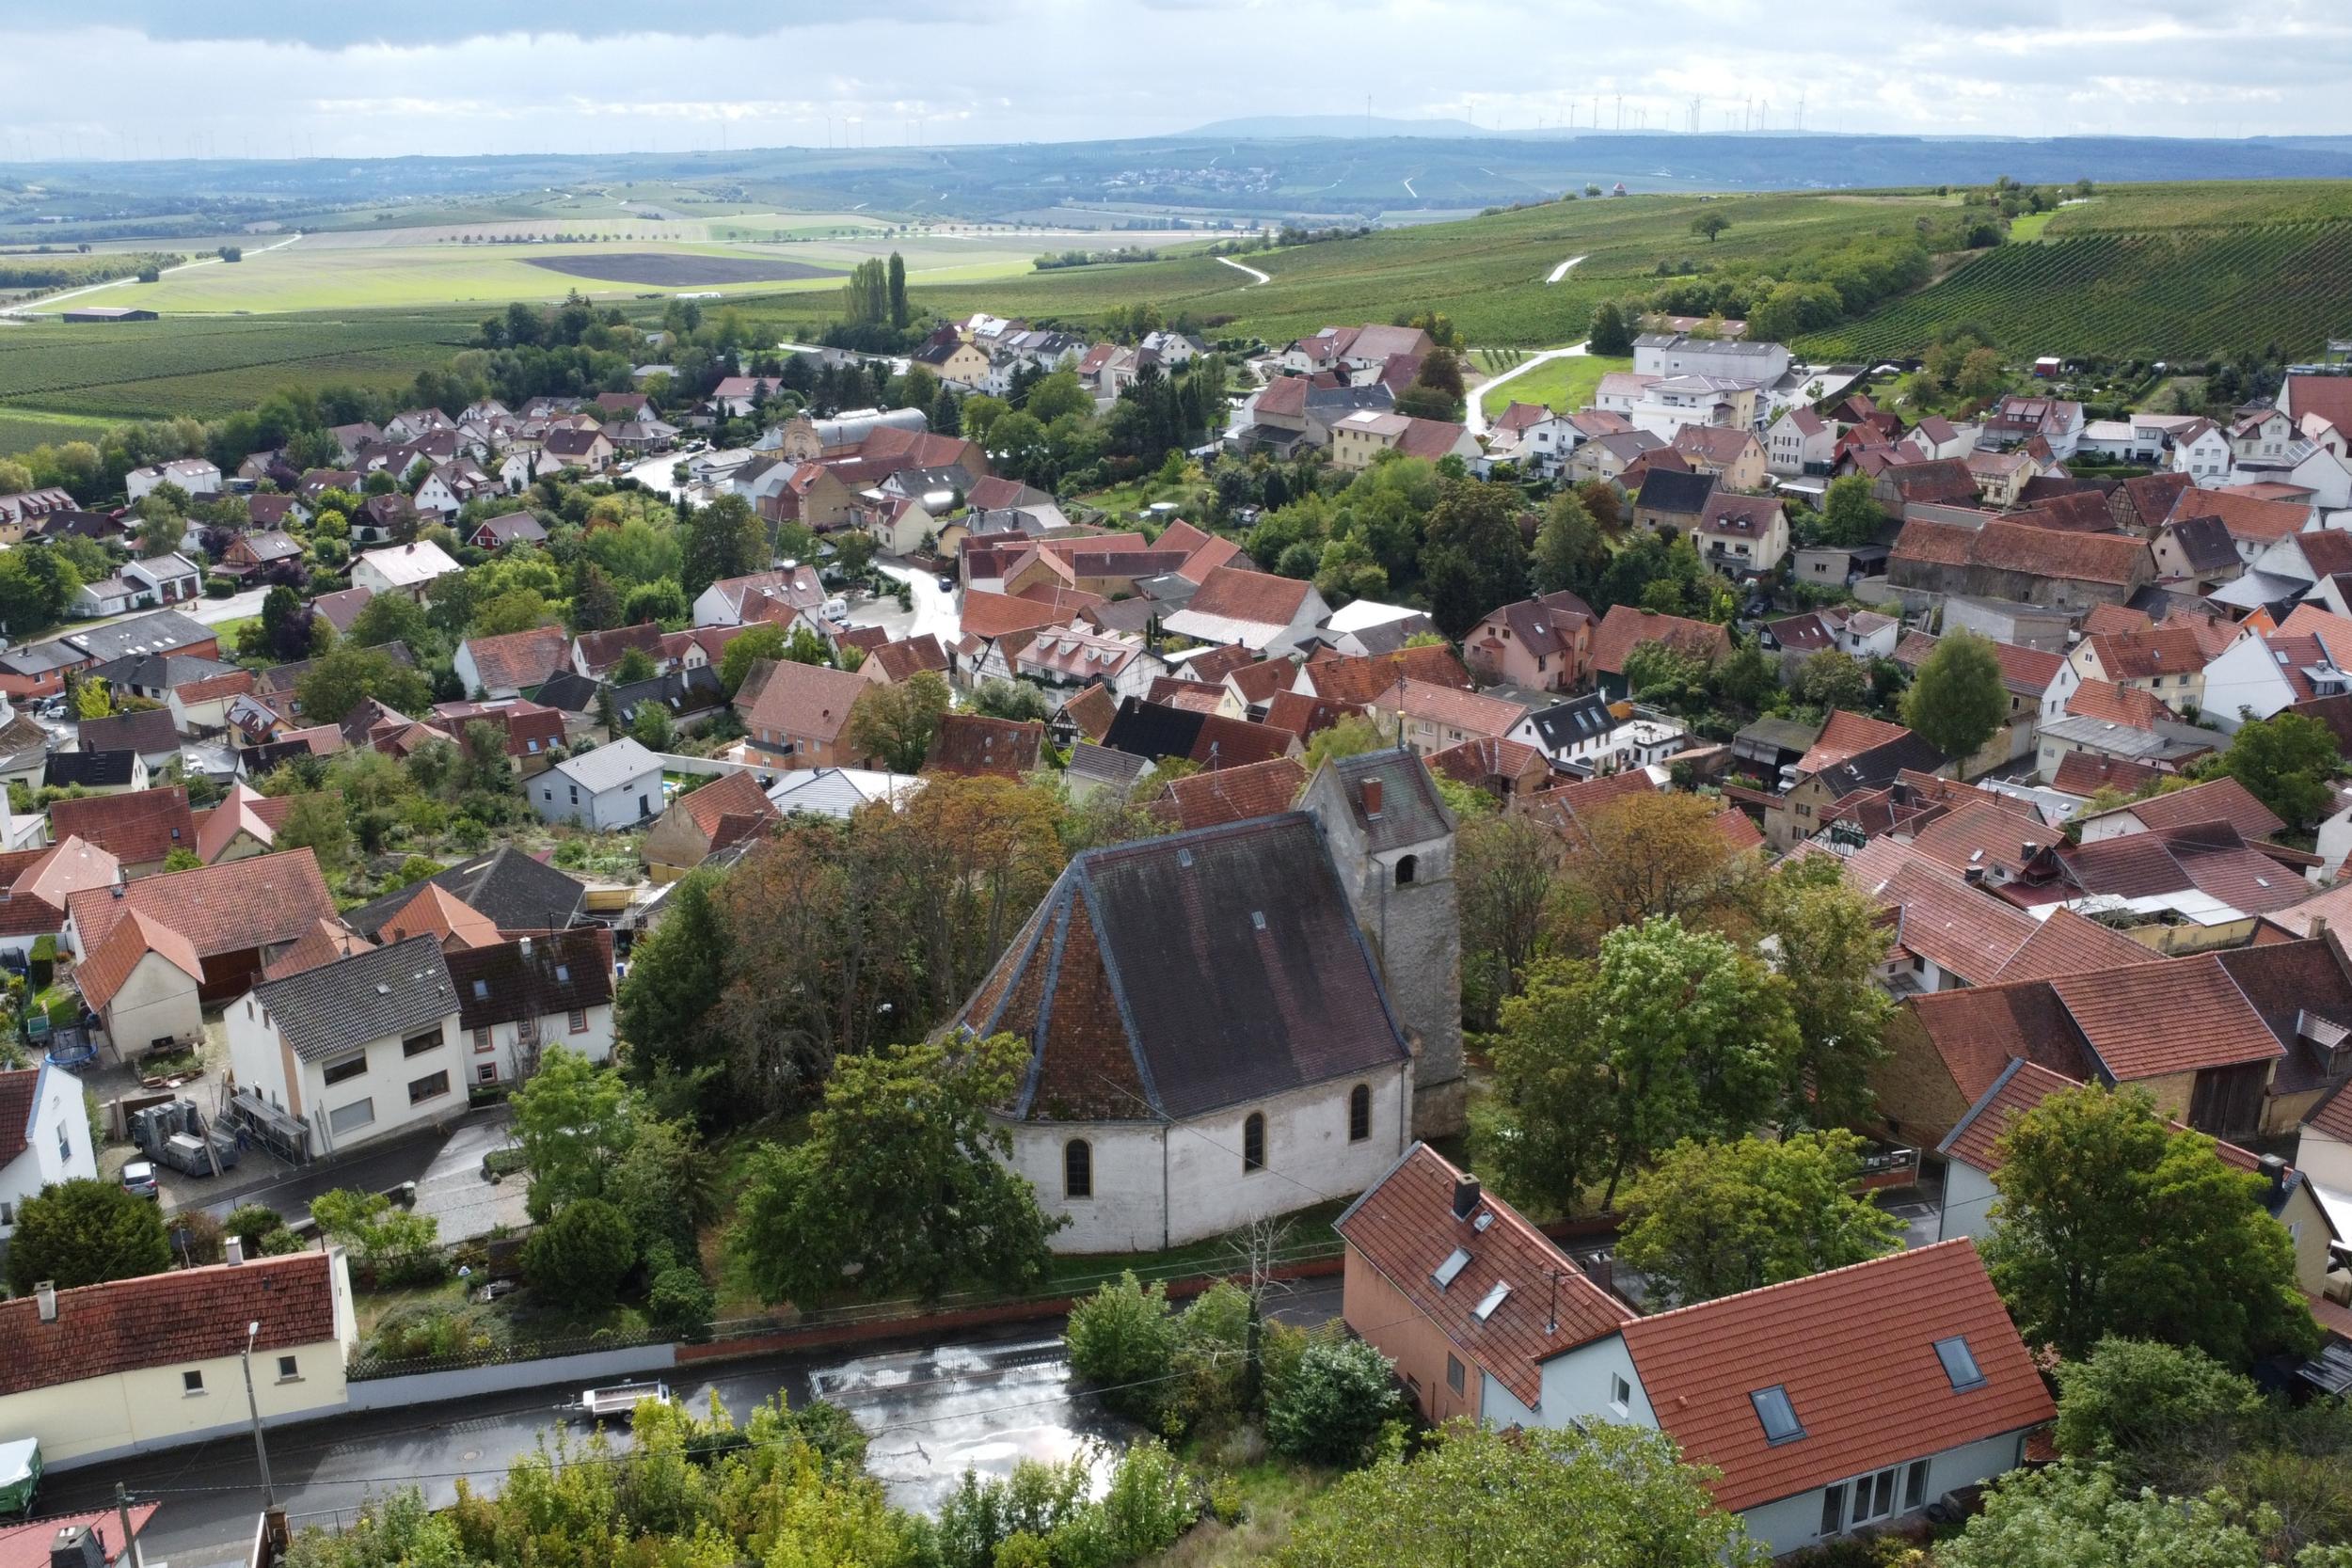 Blick auf Spiesheim